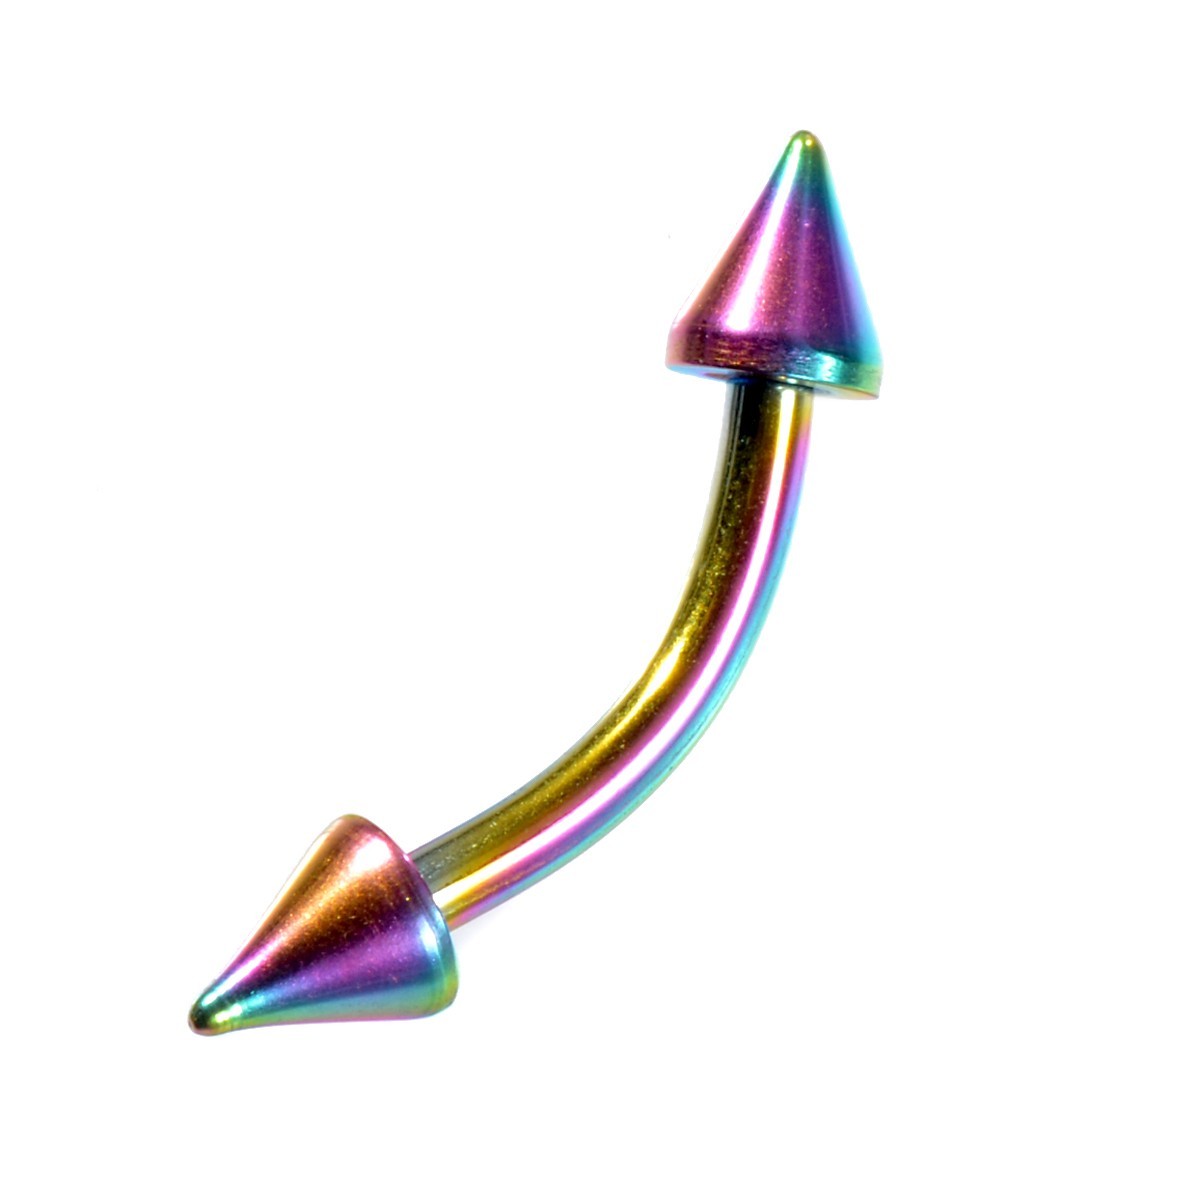 [ продажа по отдельности /1 шт ] пирсинги titanium banana штанга standard body серьги 16 мера внутренний диаметр 8.0mm кукуруза 3.0mm радуга цвет 